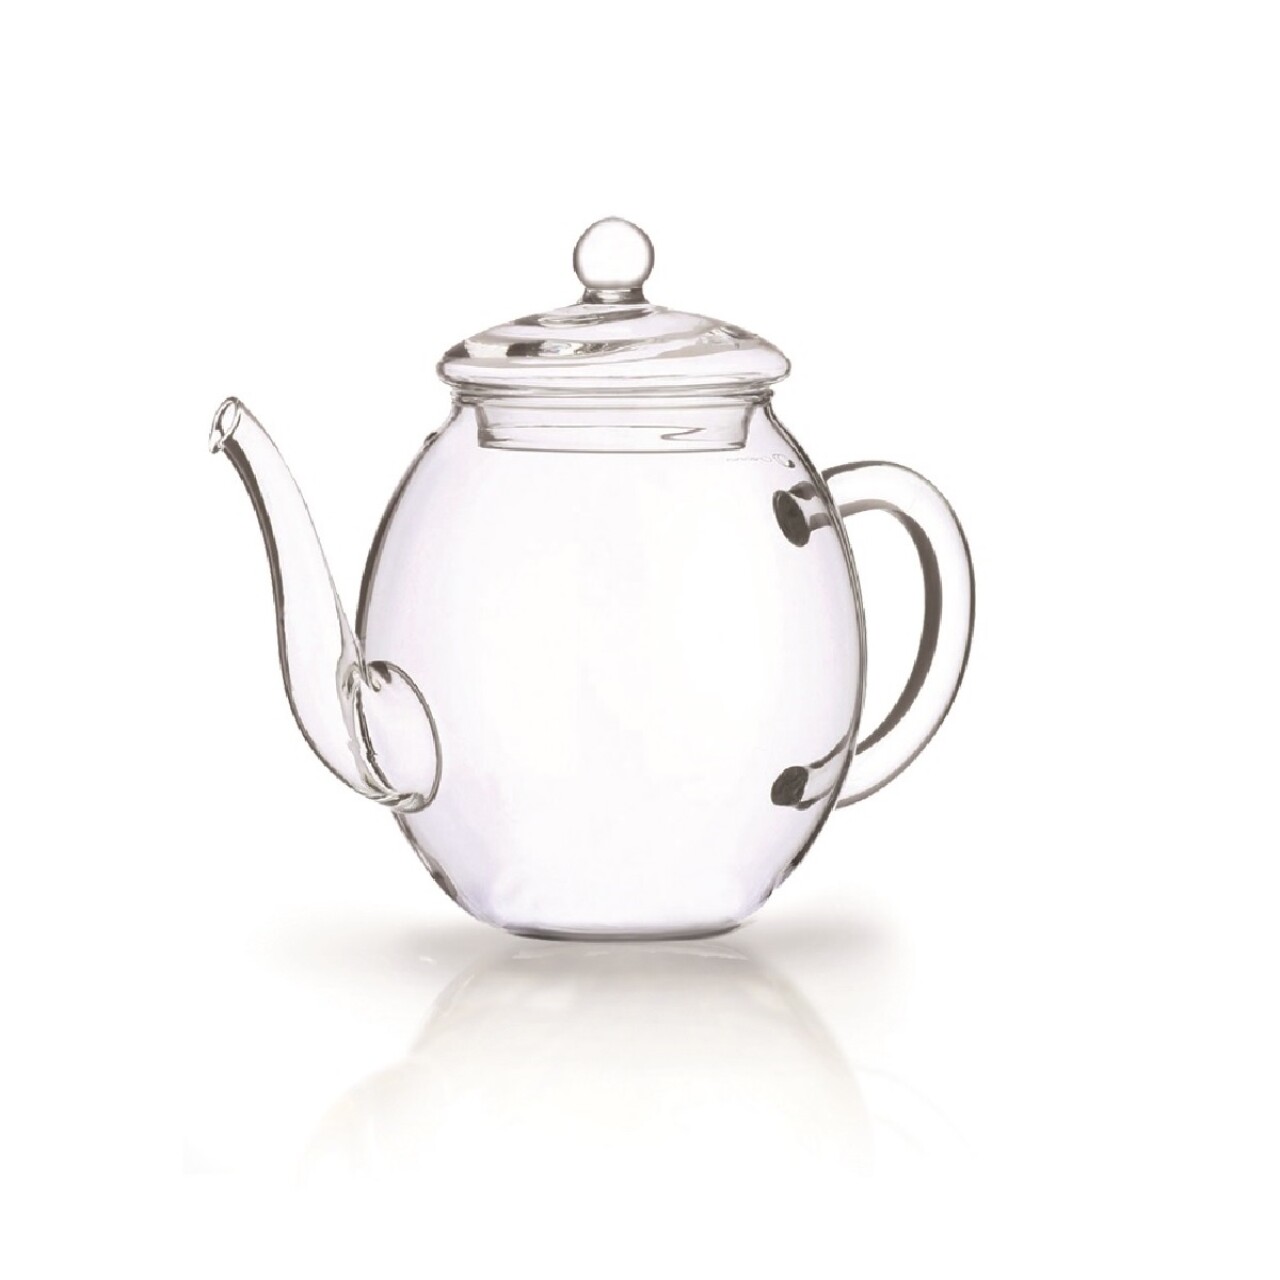 Creano "BloomingTea" gift set White tea and glass tea pot, 0.5 l